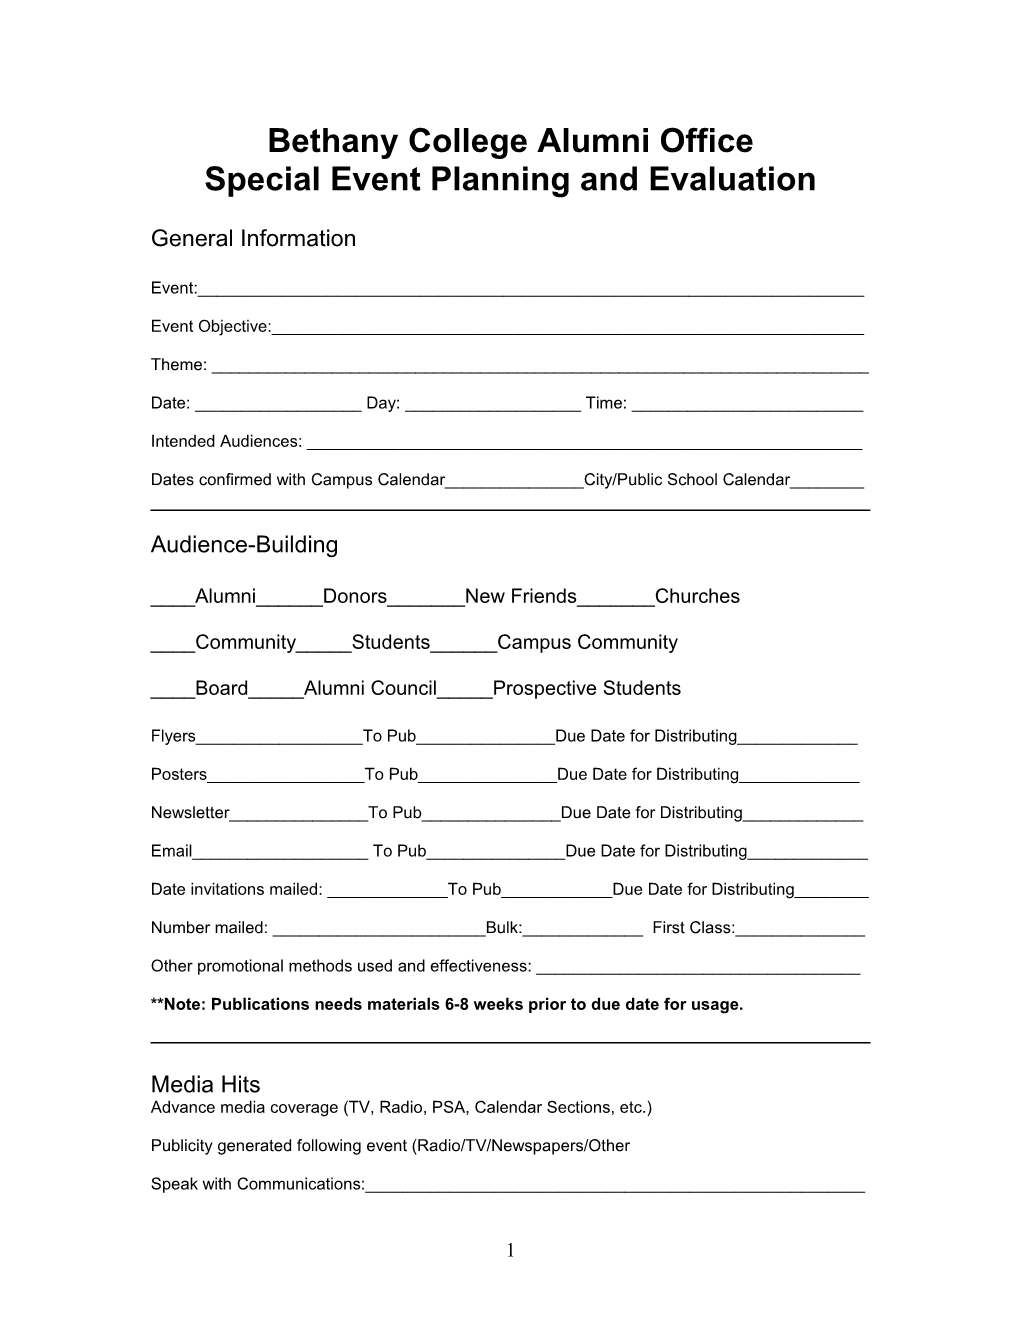 Special Event Evaluation